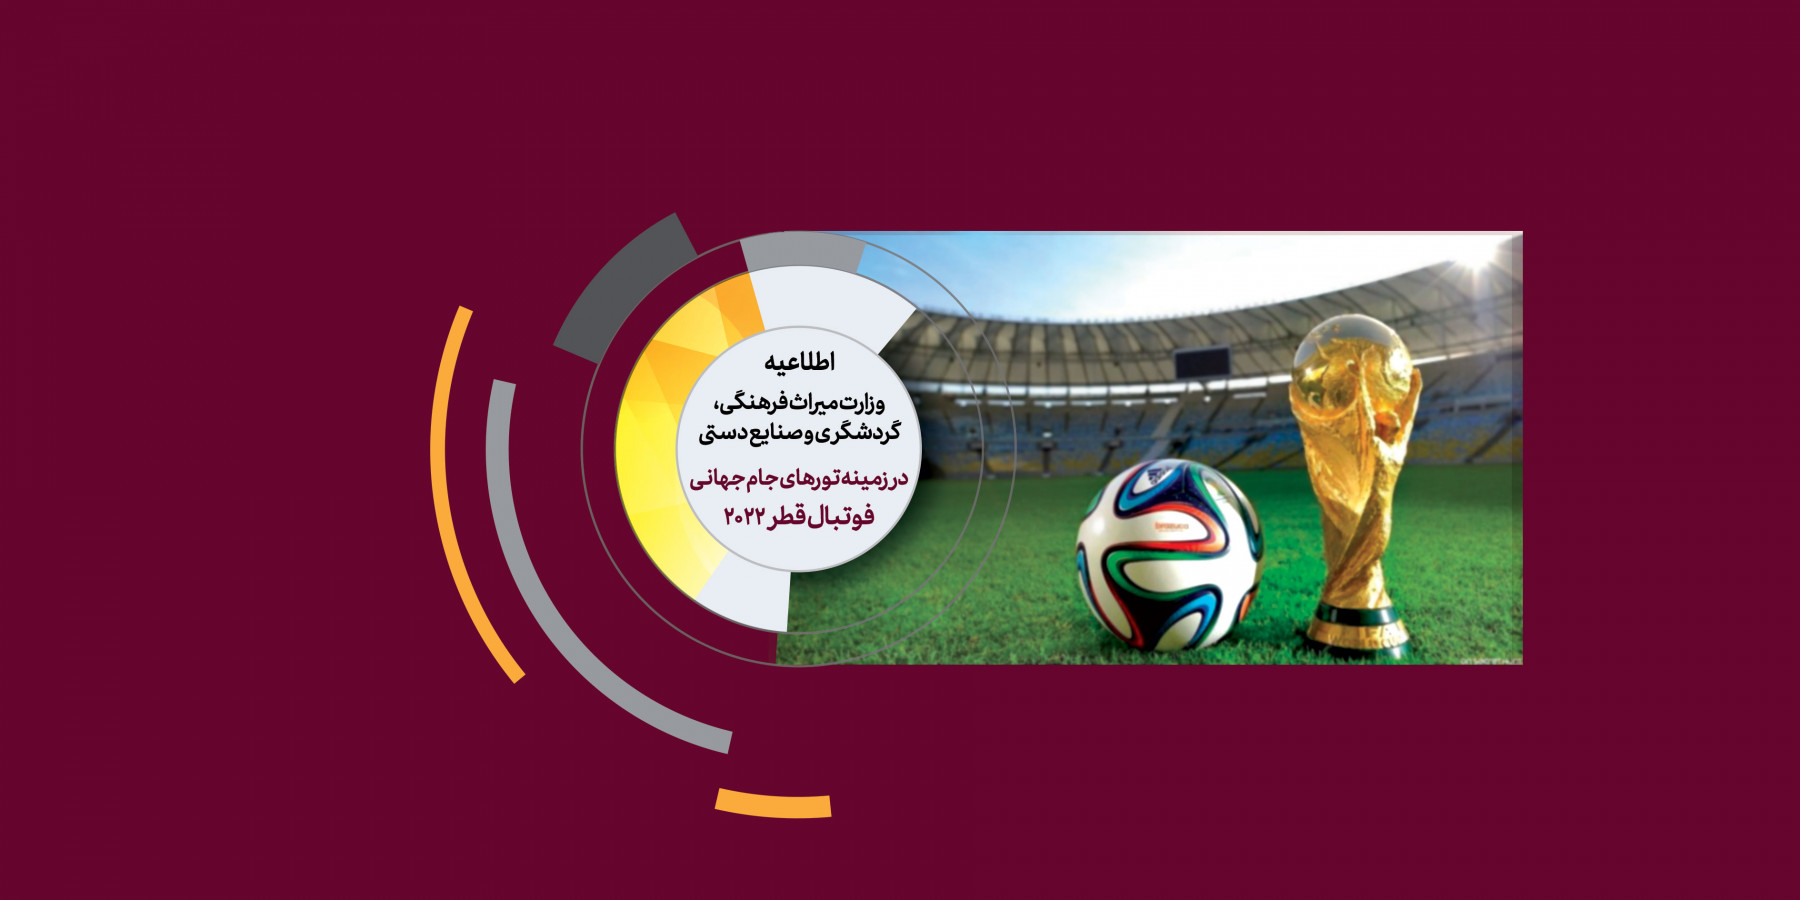 اطلاعیه وزارت میراث فرهنگی، گردشگری و صنایع دستی در زمینه تورهای جام جهانی فوتبال قطر2022